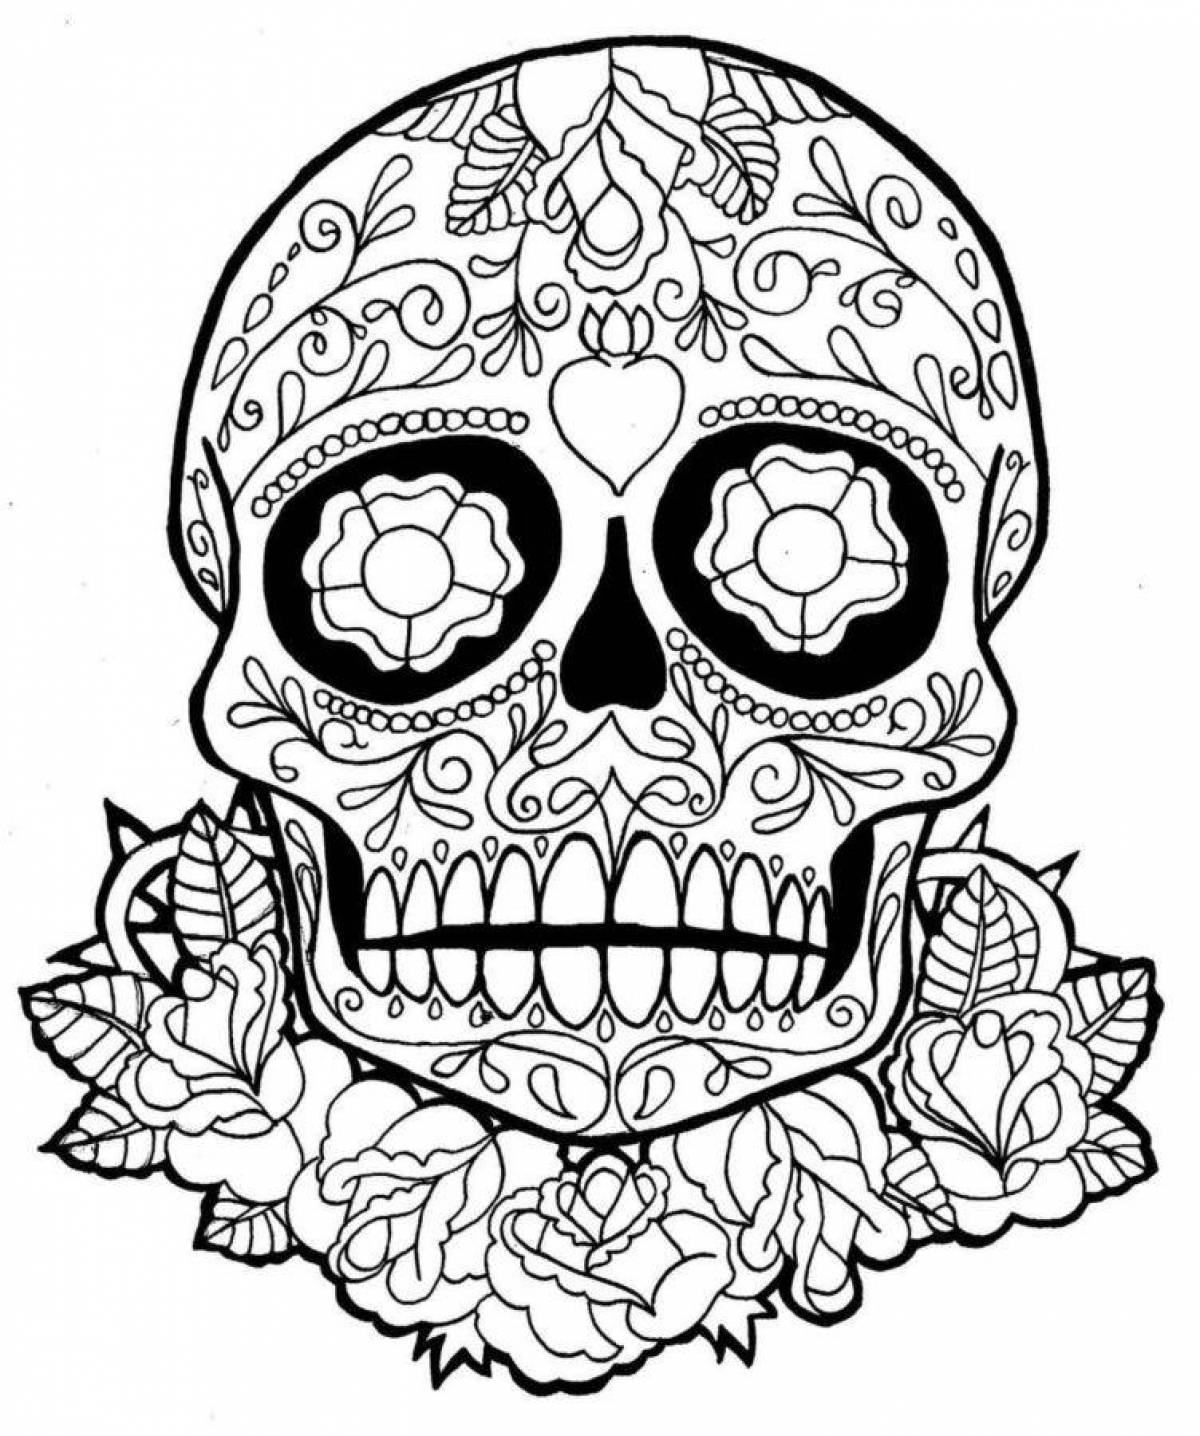 Fun skull coloring